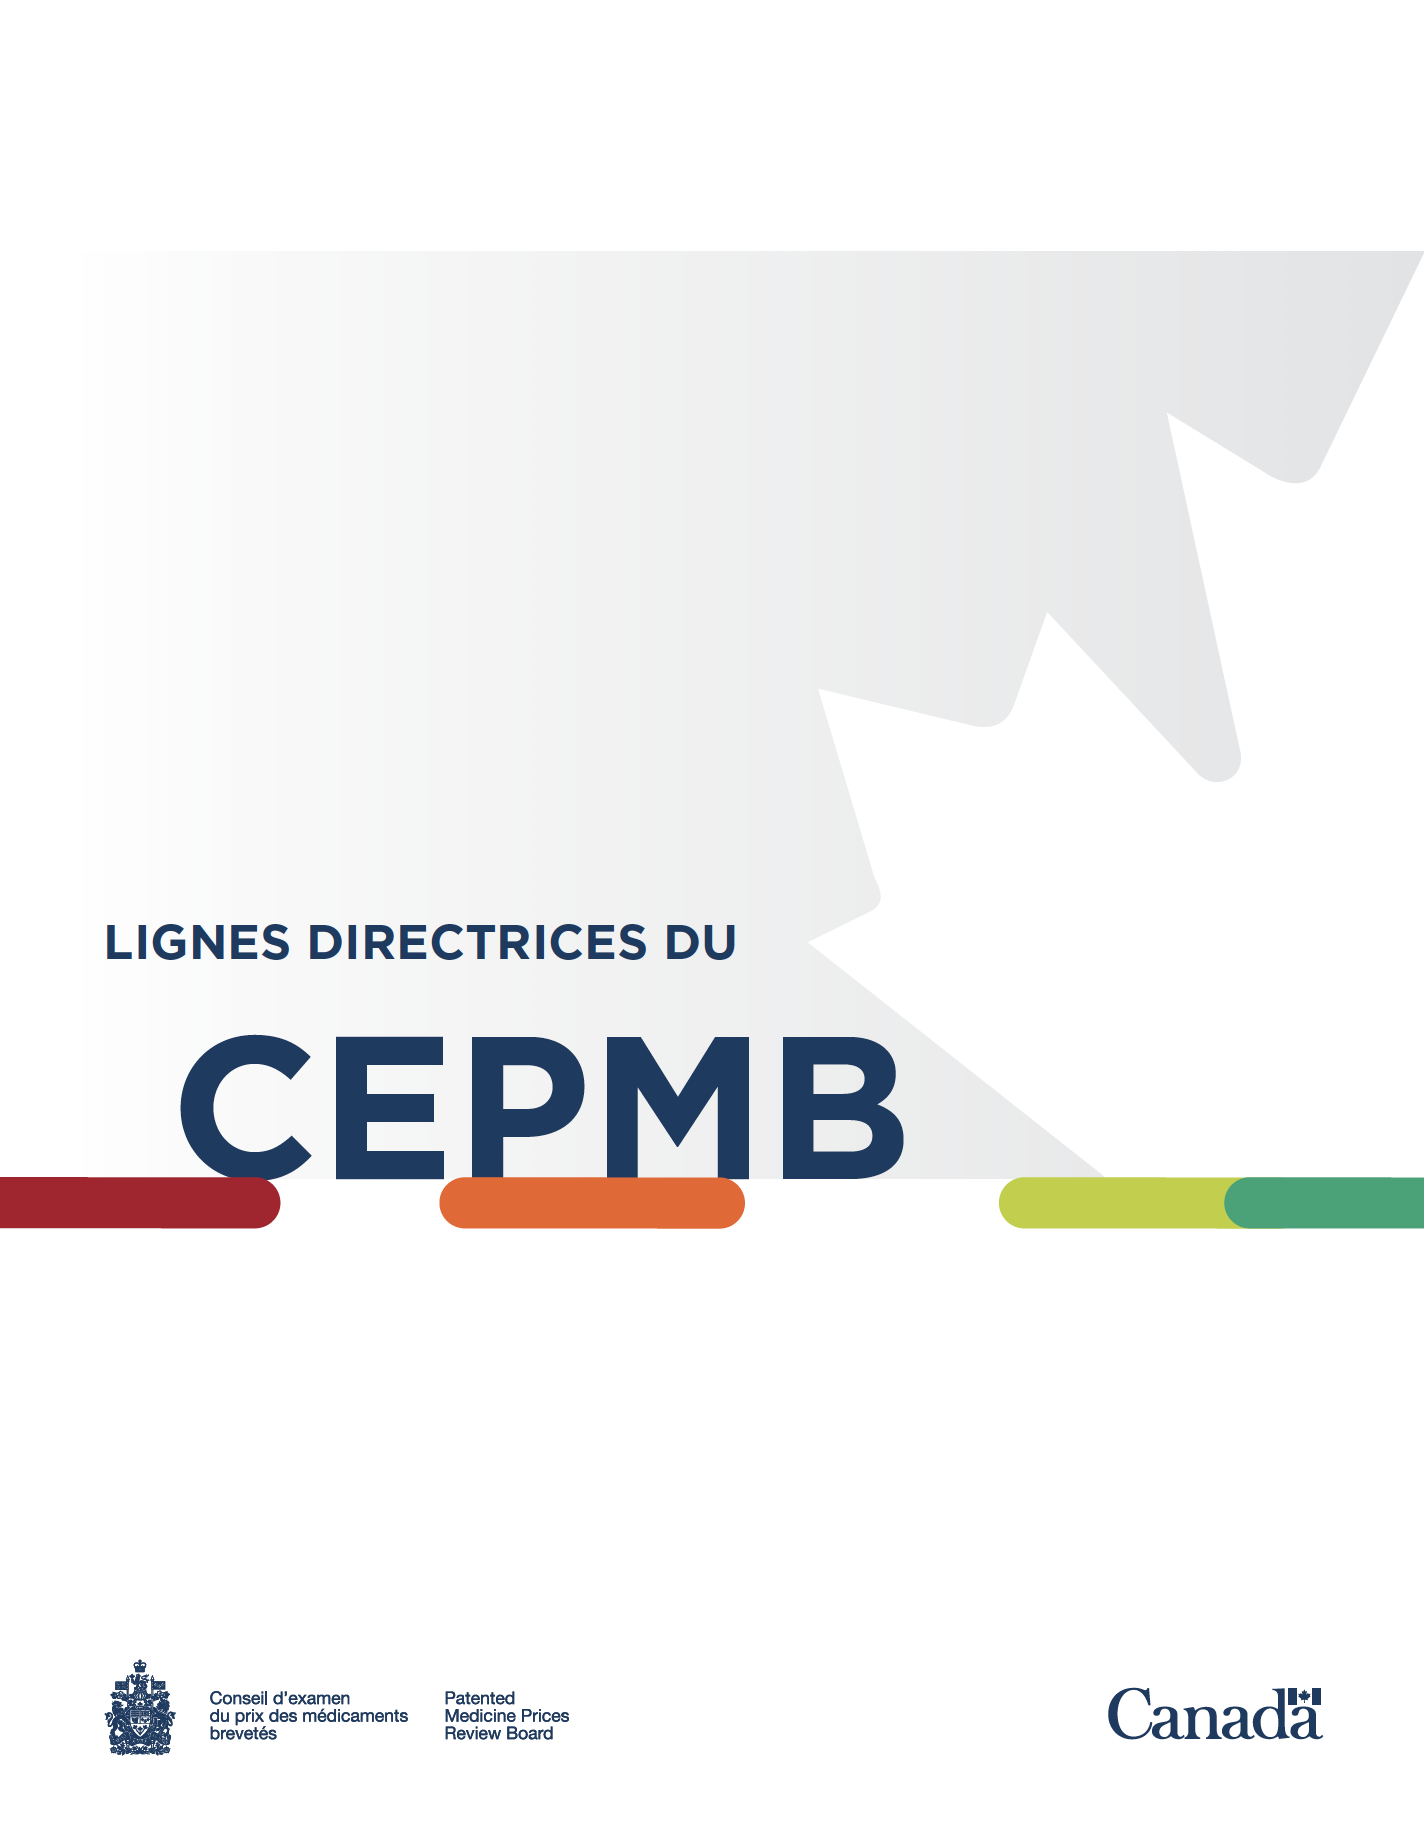 Lignes directrices du CEPMB 2020